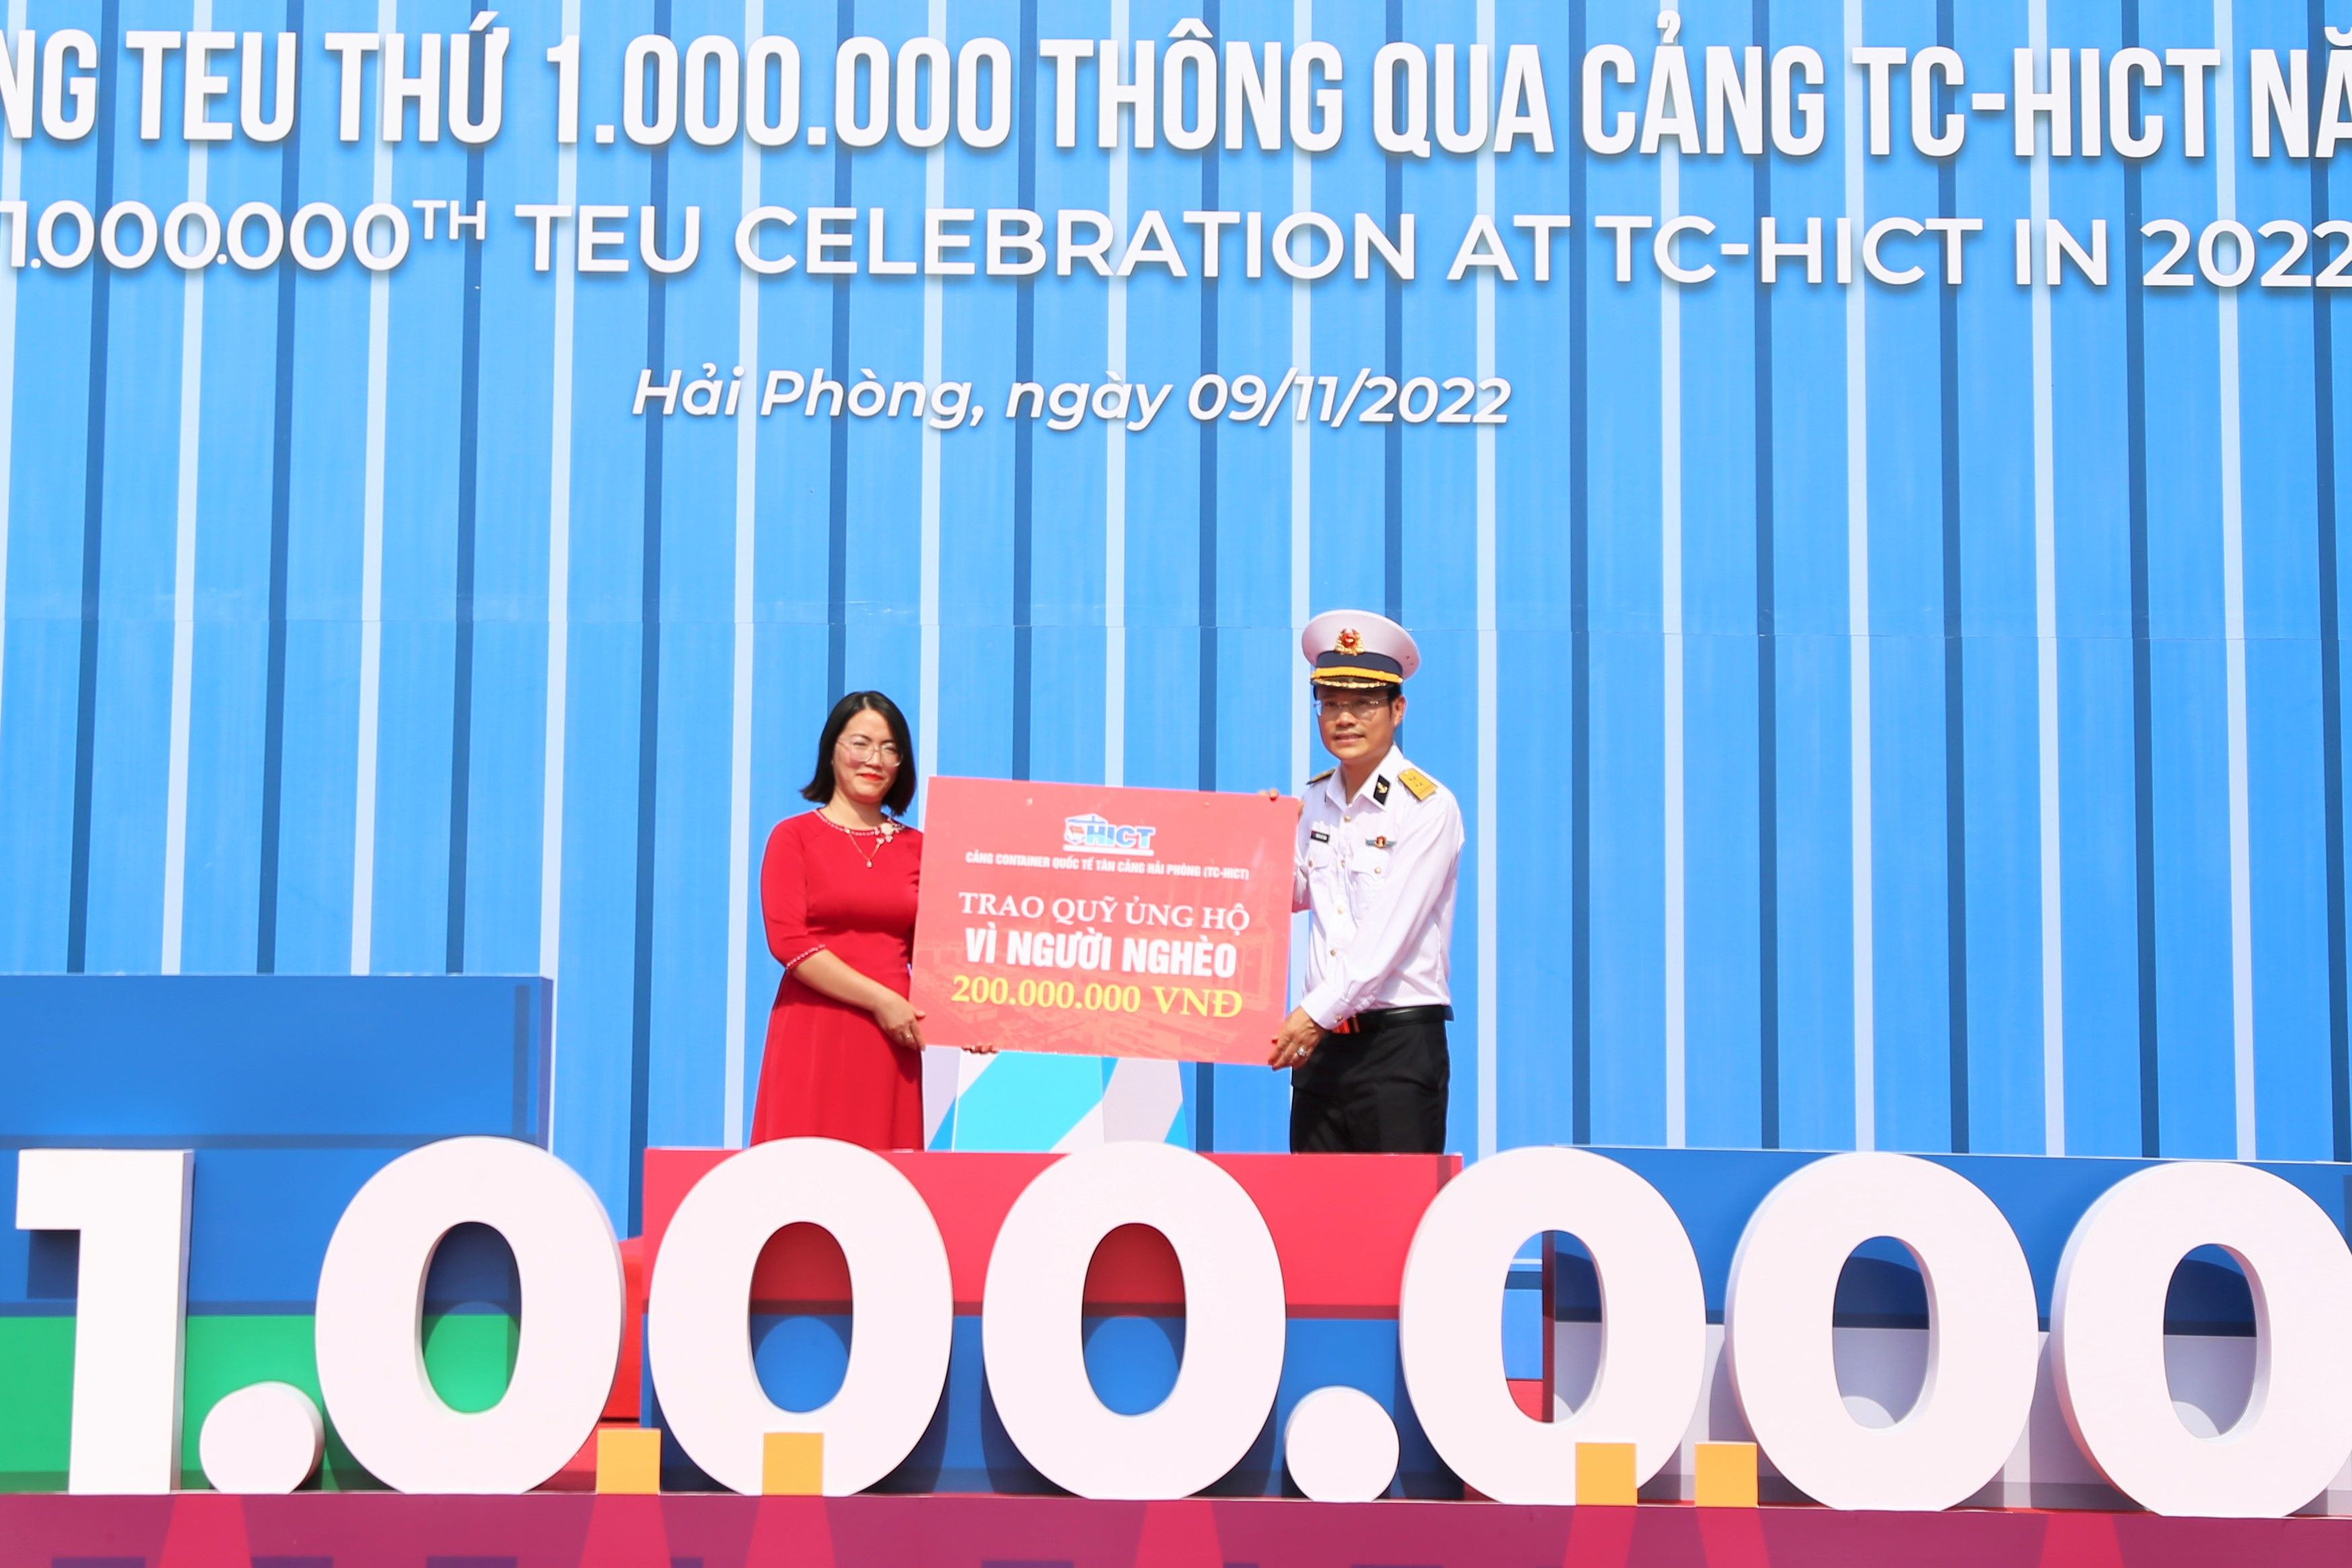 Trung tá Đoàn Hải Tuấn, Chủ tịch HĐTV cảng TC-HICT ủng hộ Quỹ vì người nghèo huyện Cát Hải, TP. Hải Phòng